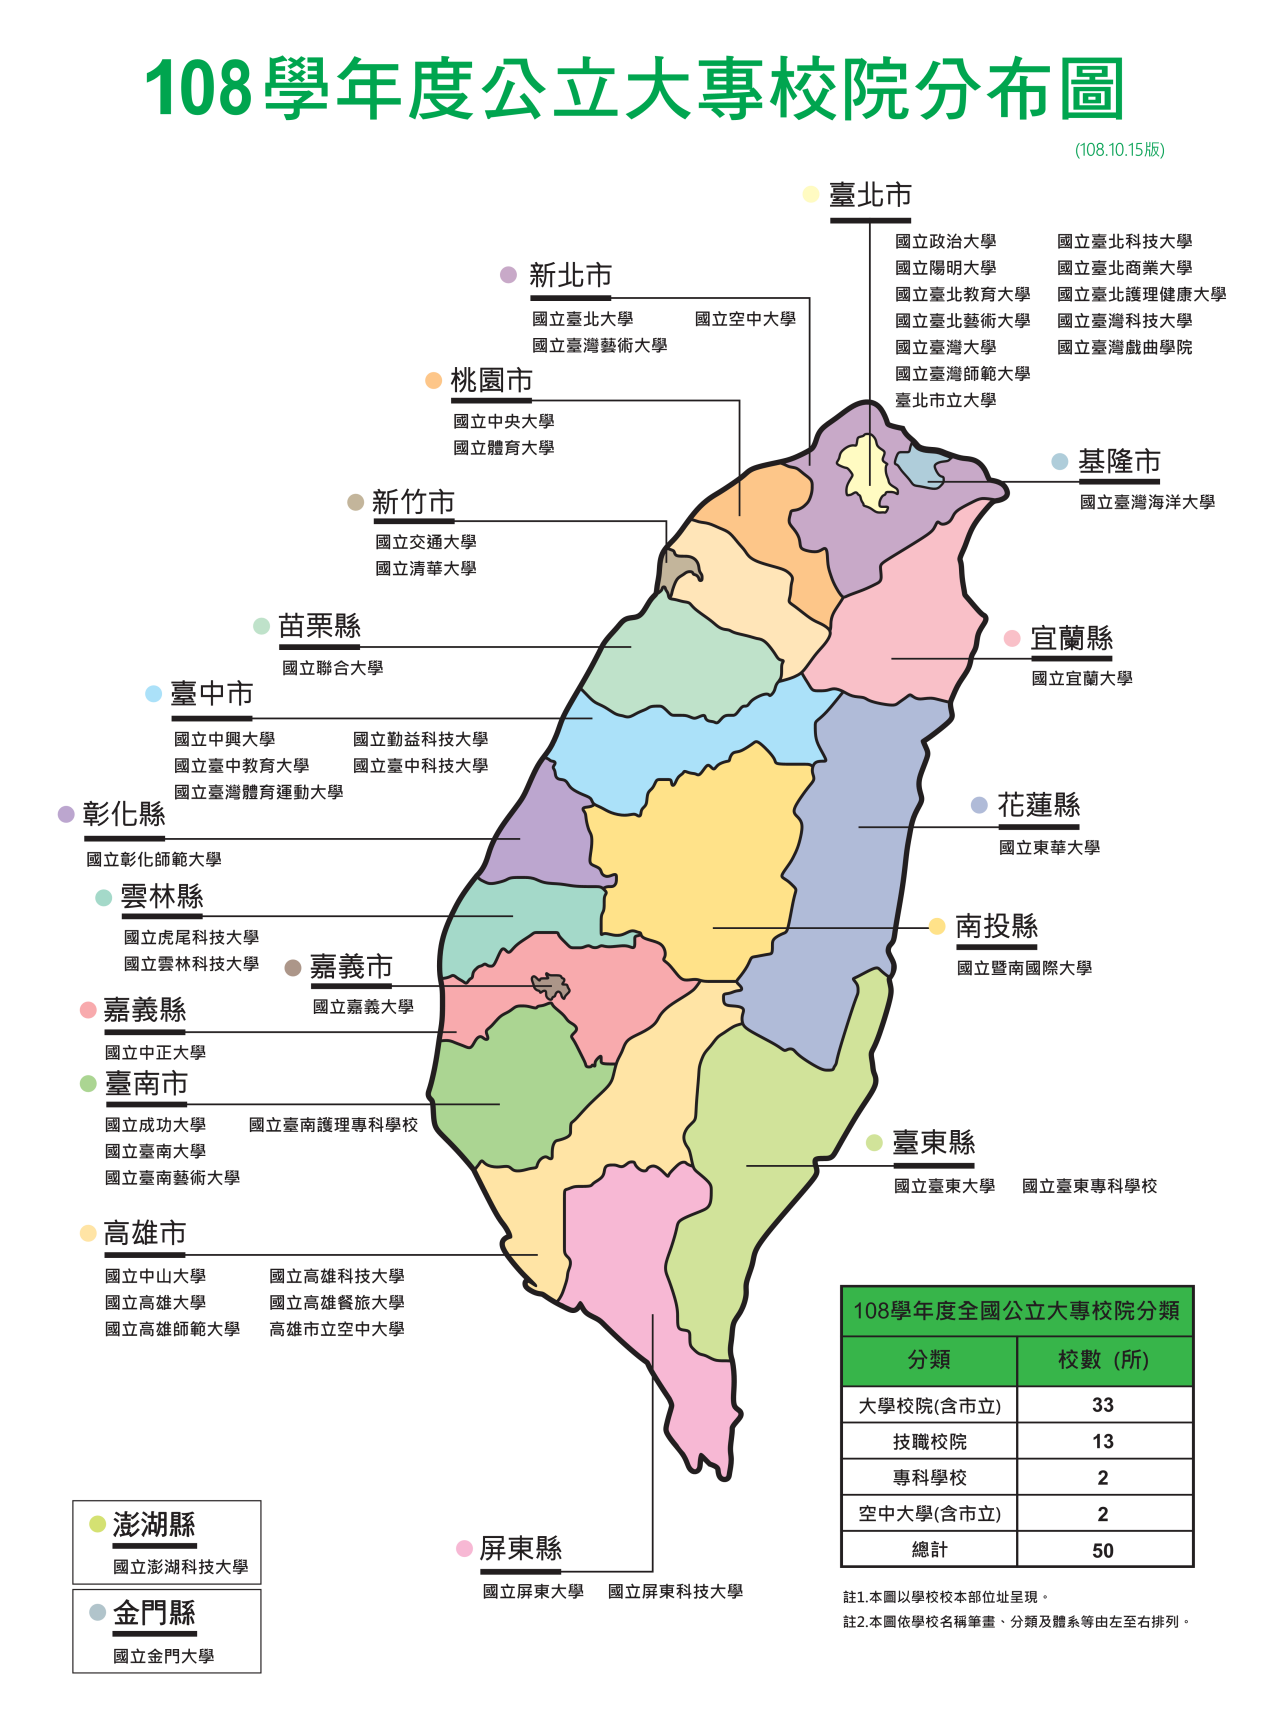 2张图看懂中国台湾省的大学分布